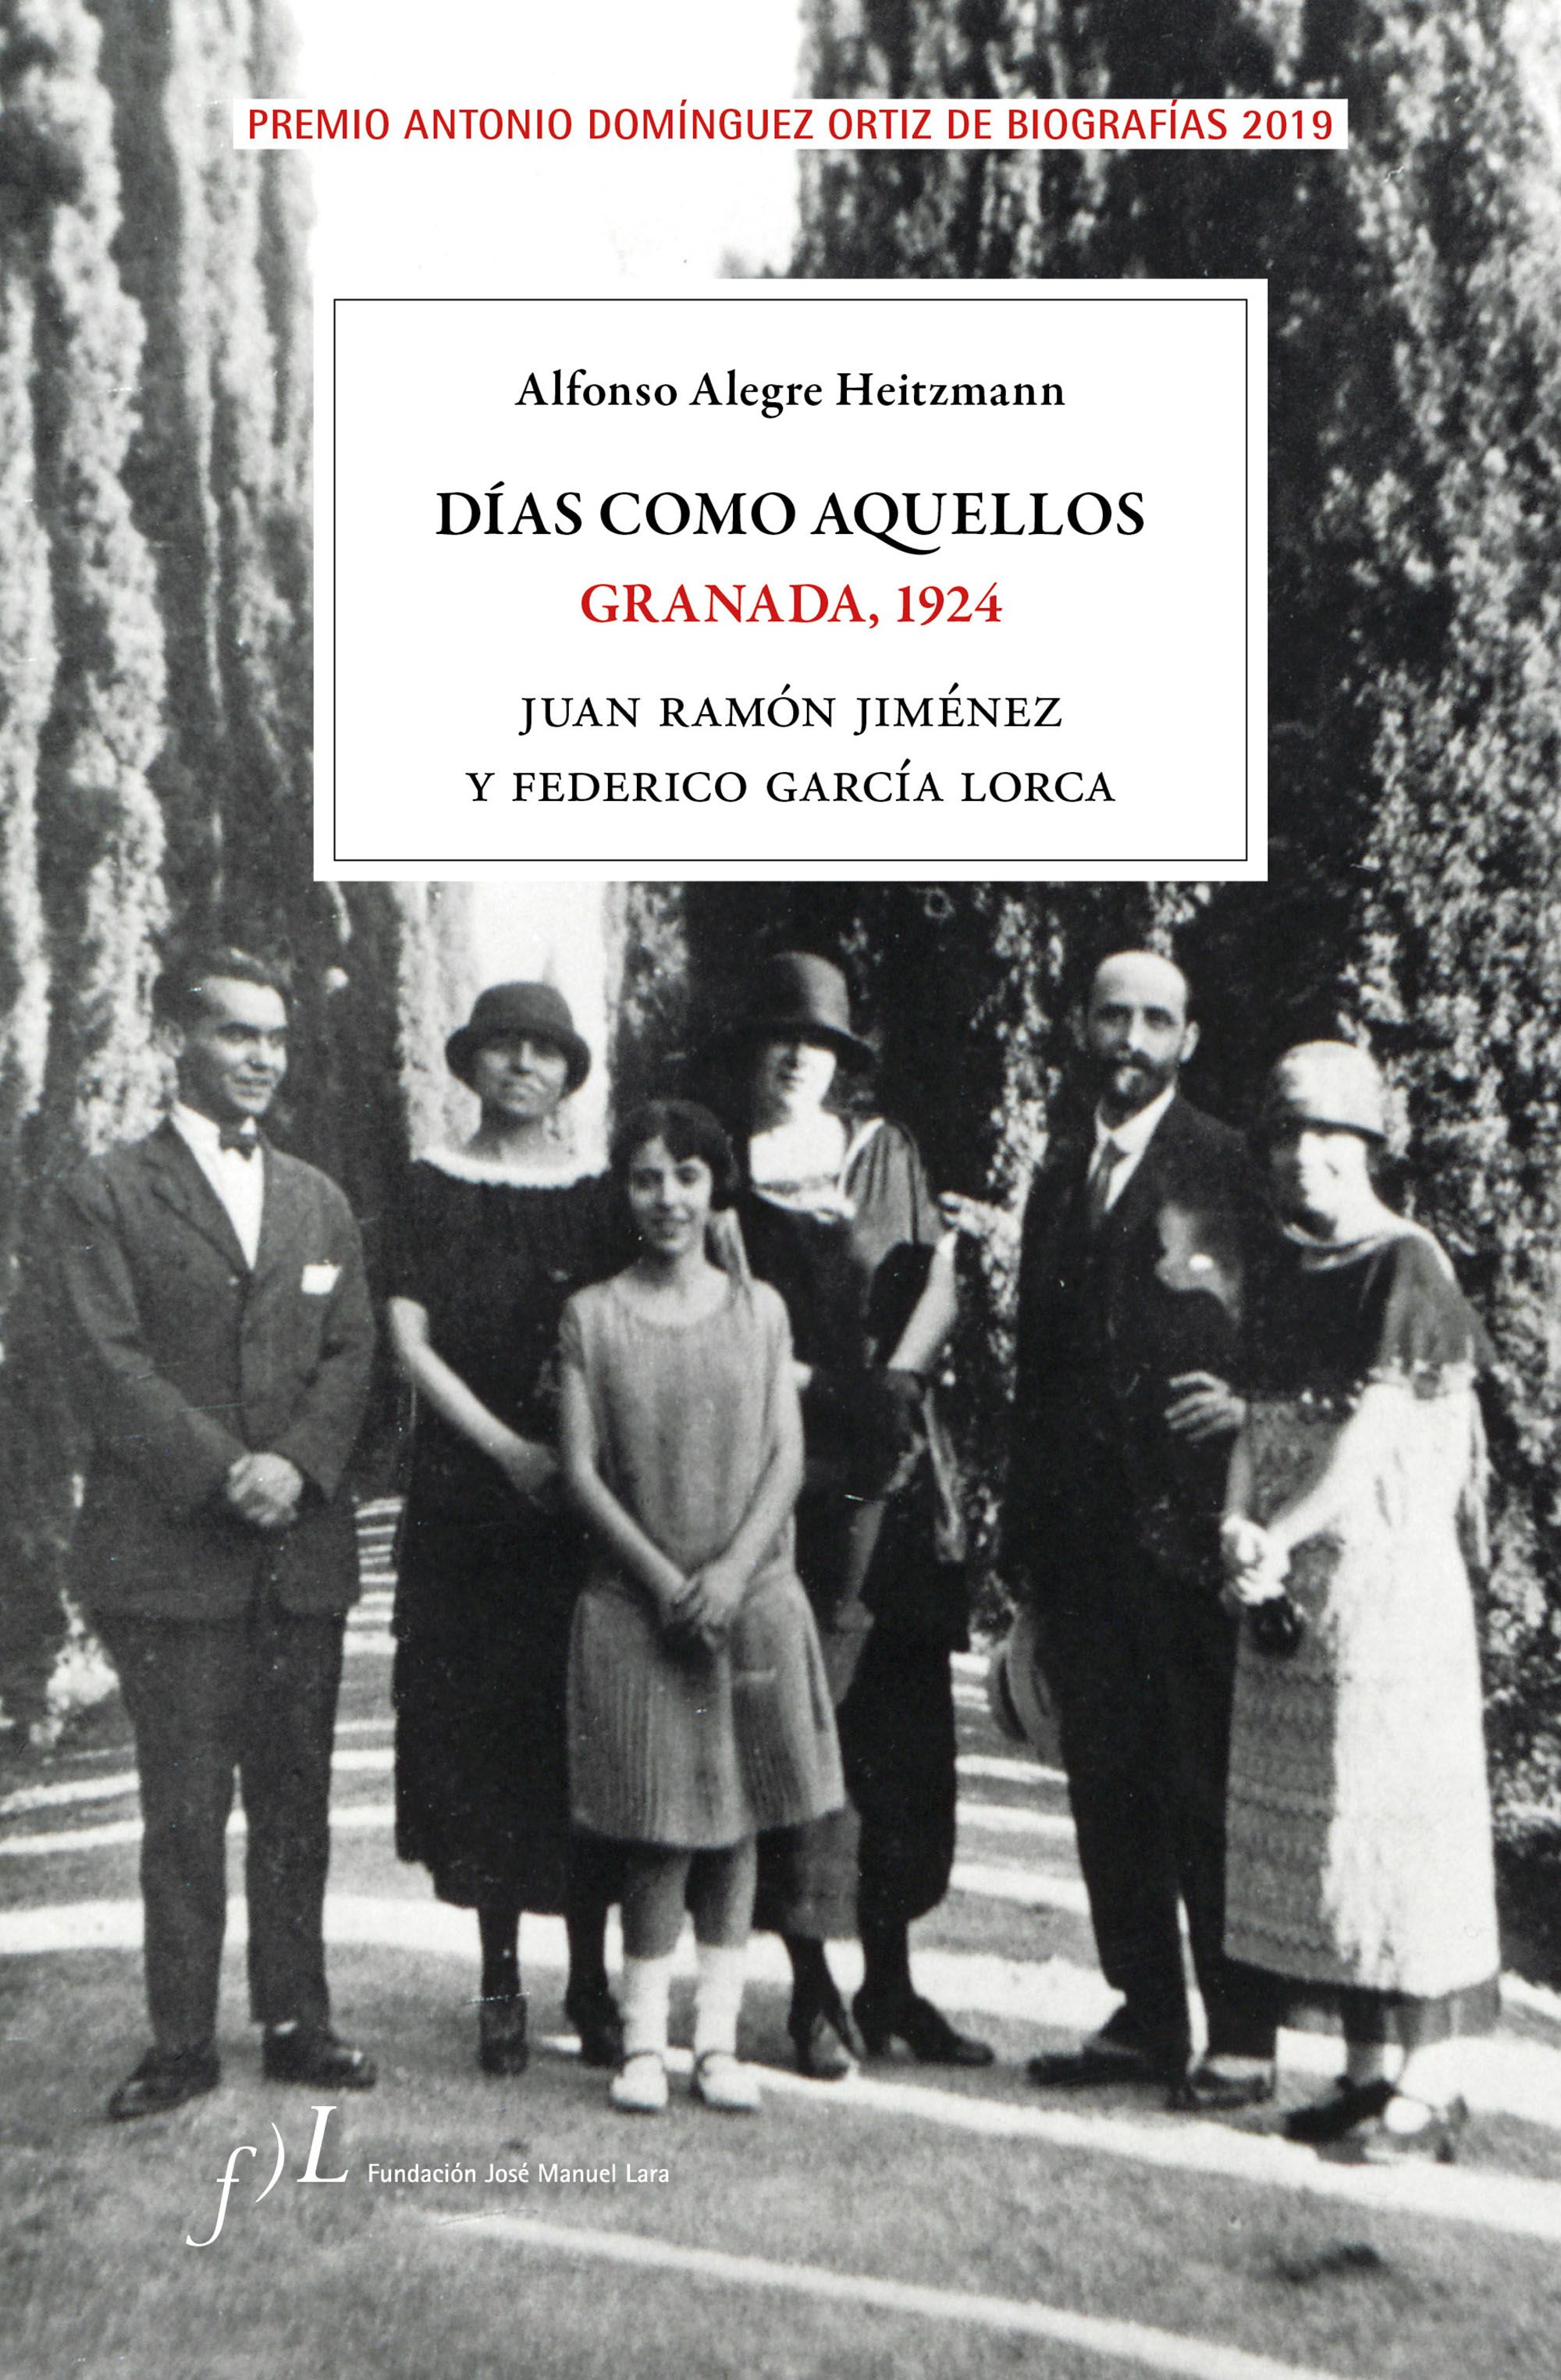 Días como aquellos. Granada, 1924 (Alfonso Alegre Heitzmann, 2019)